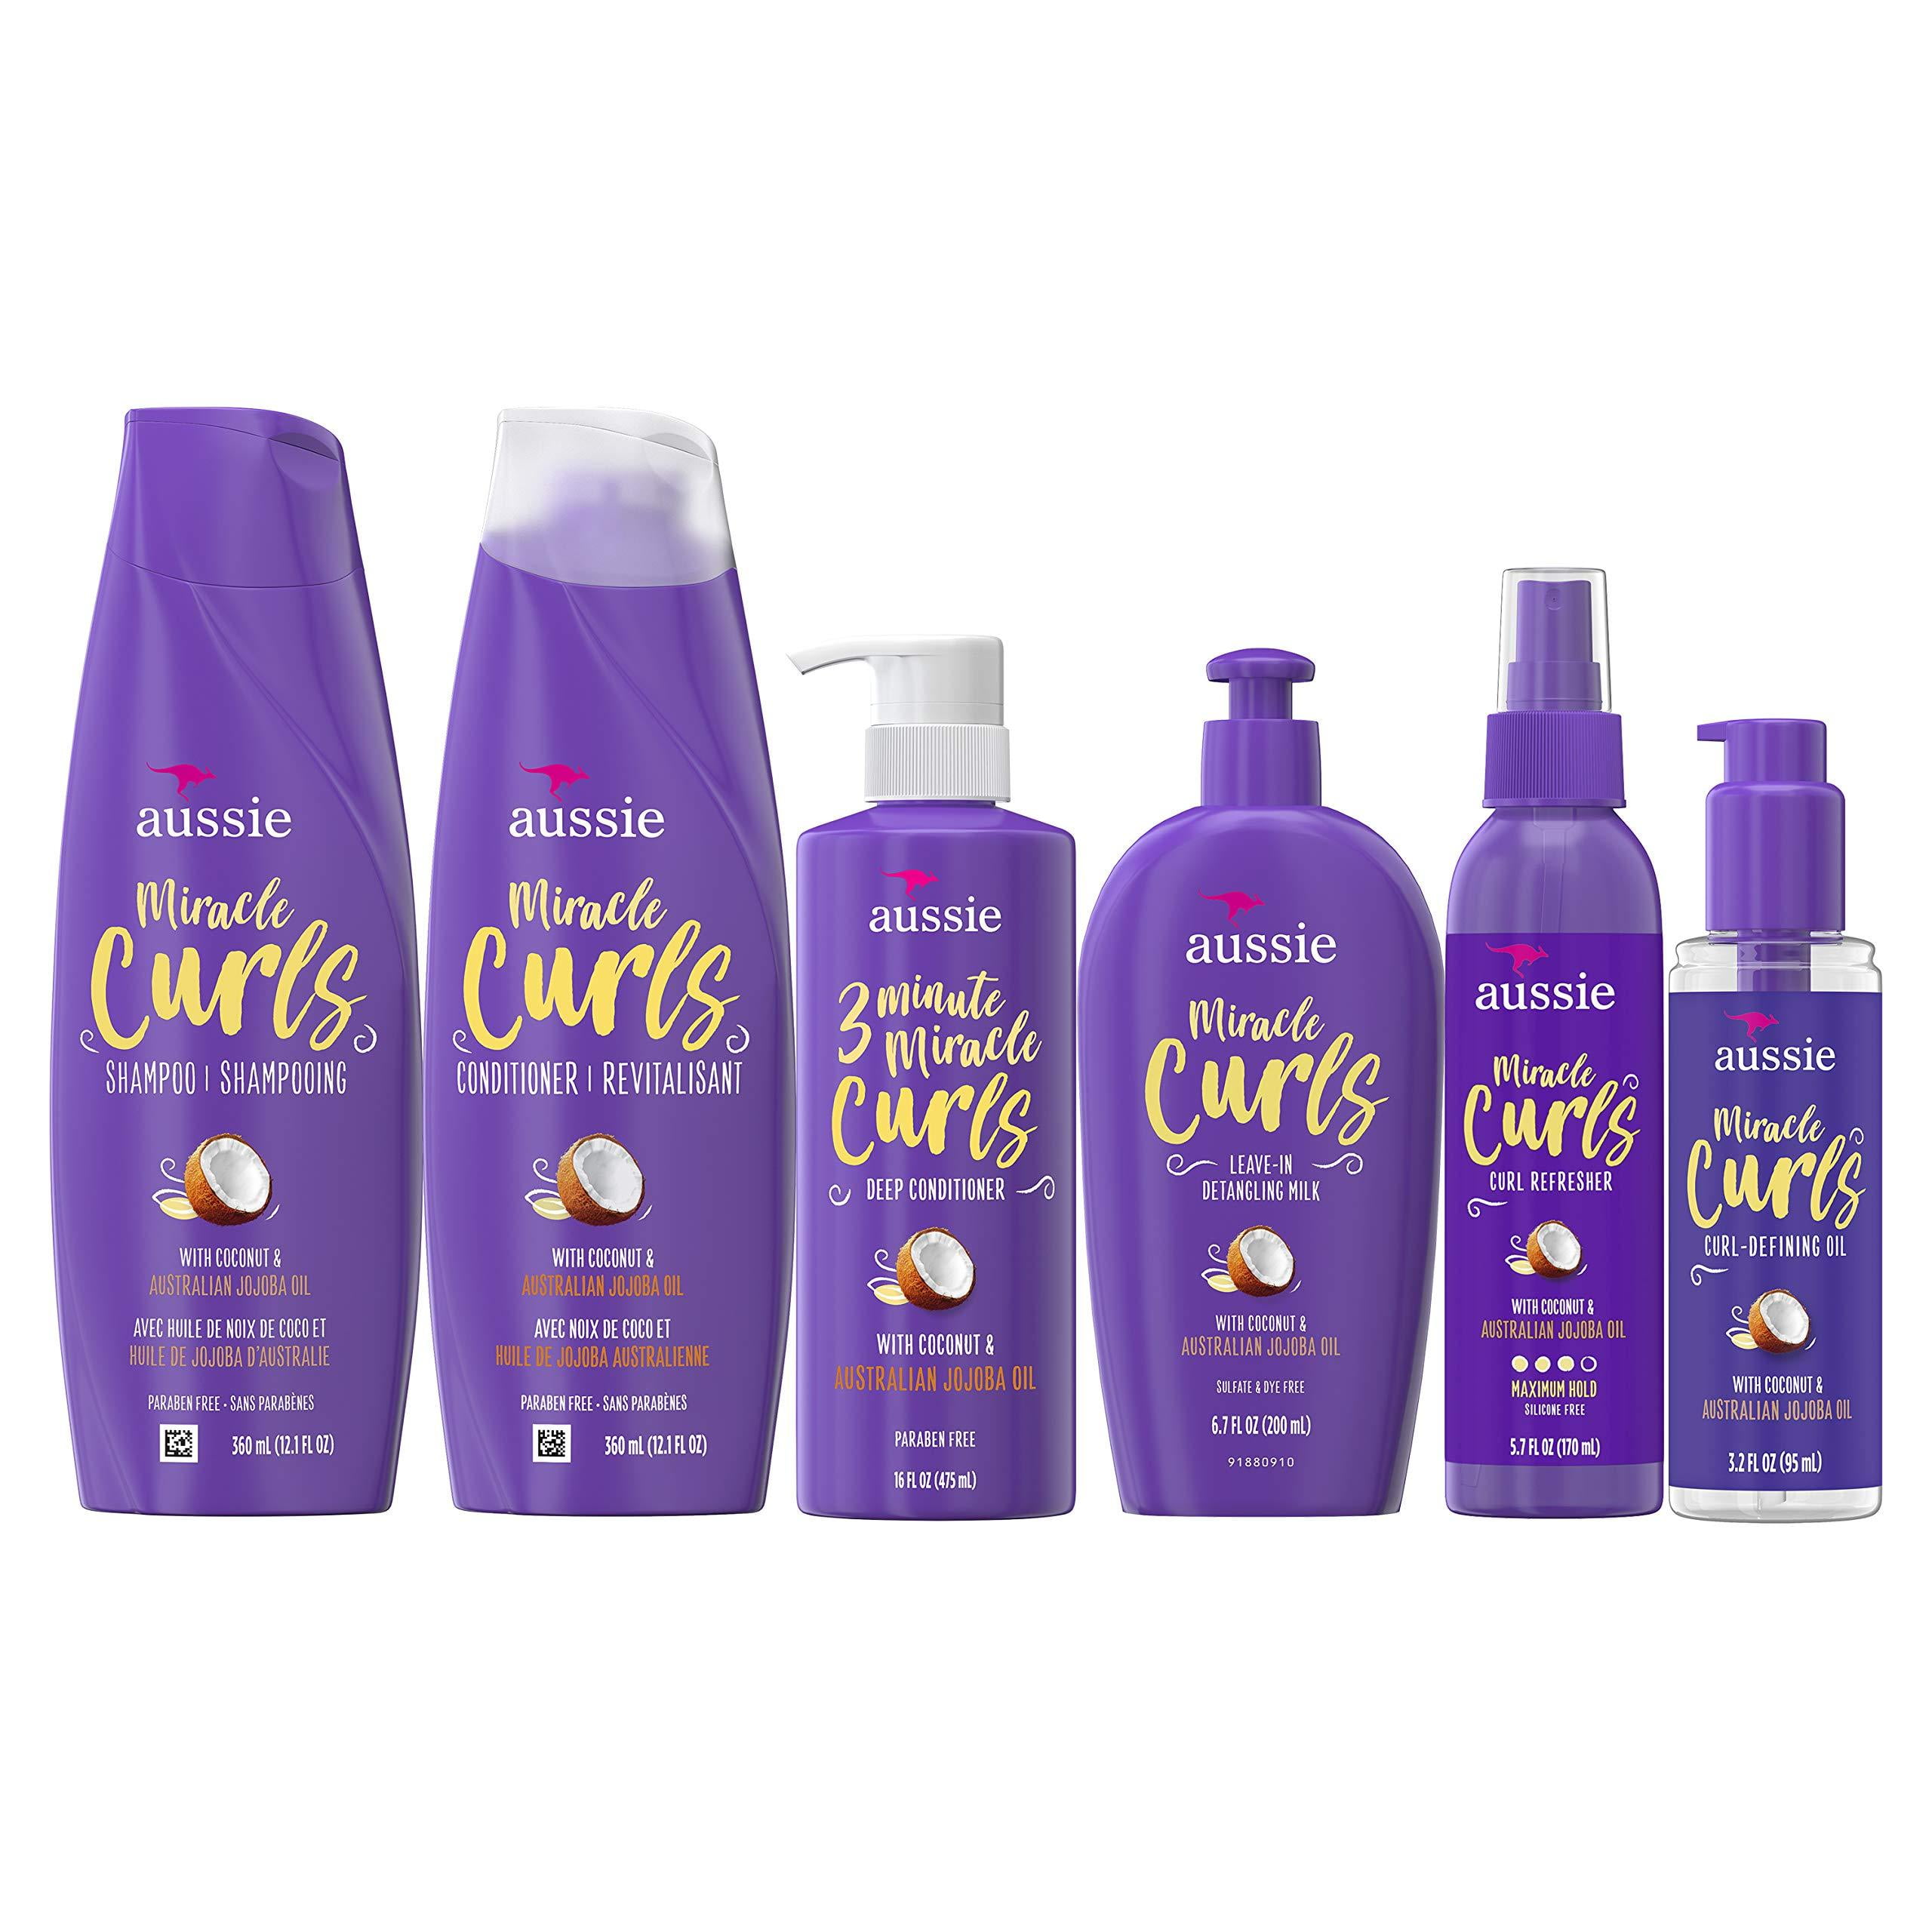 Aussie Aussie Curls Collection: Shampoo, Conditioner, Deep Conditioner, Spray Gel, Detangling Milk, and Oil Hair Treatment - Walmart.com